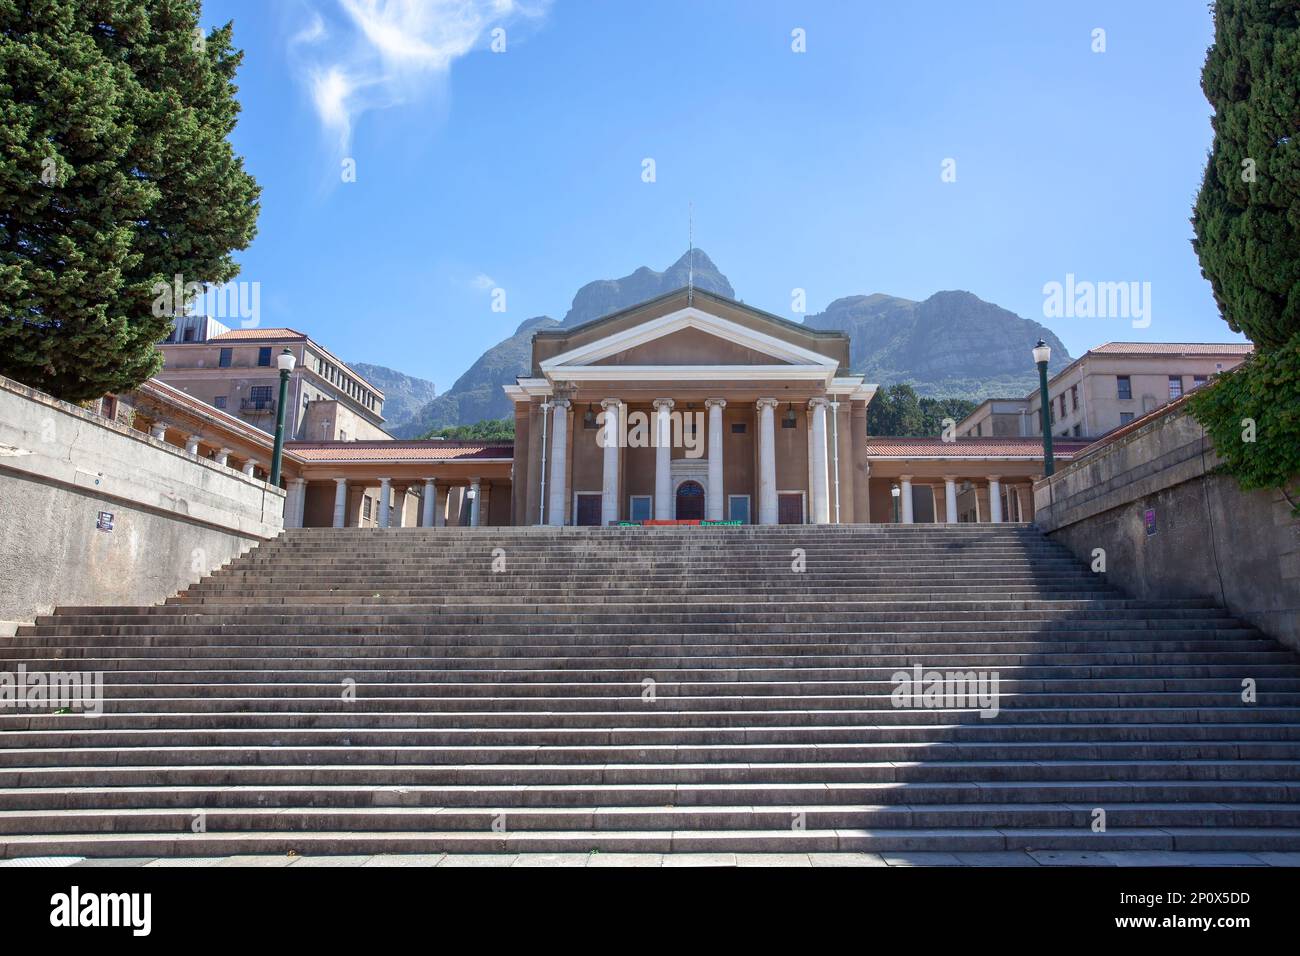 Università UCT di città del Capo, Sudafrica, uno dei principali istituti di istruzione superiore in Africa Foto Stock